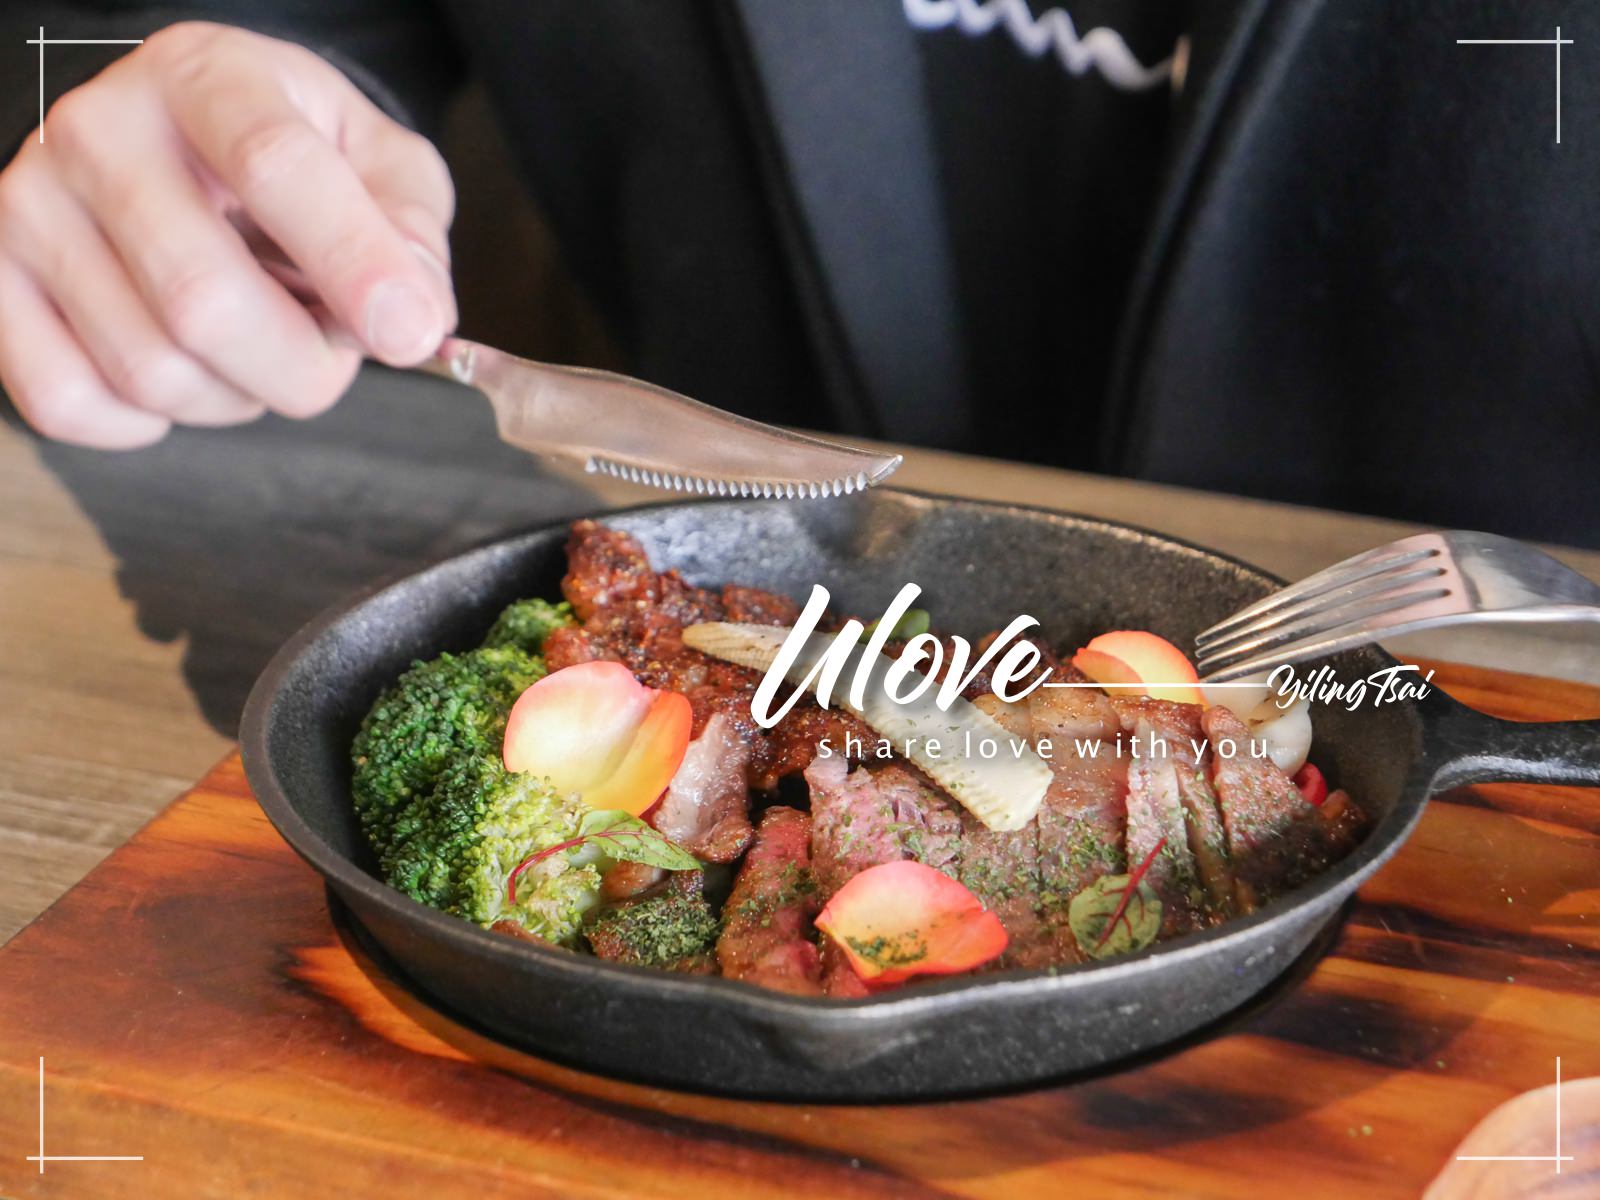 台北小巨蛋站美食 ULOVE 羽樂歐陸創意料理 優質服務歡愉餐點好時光